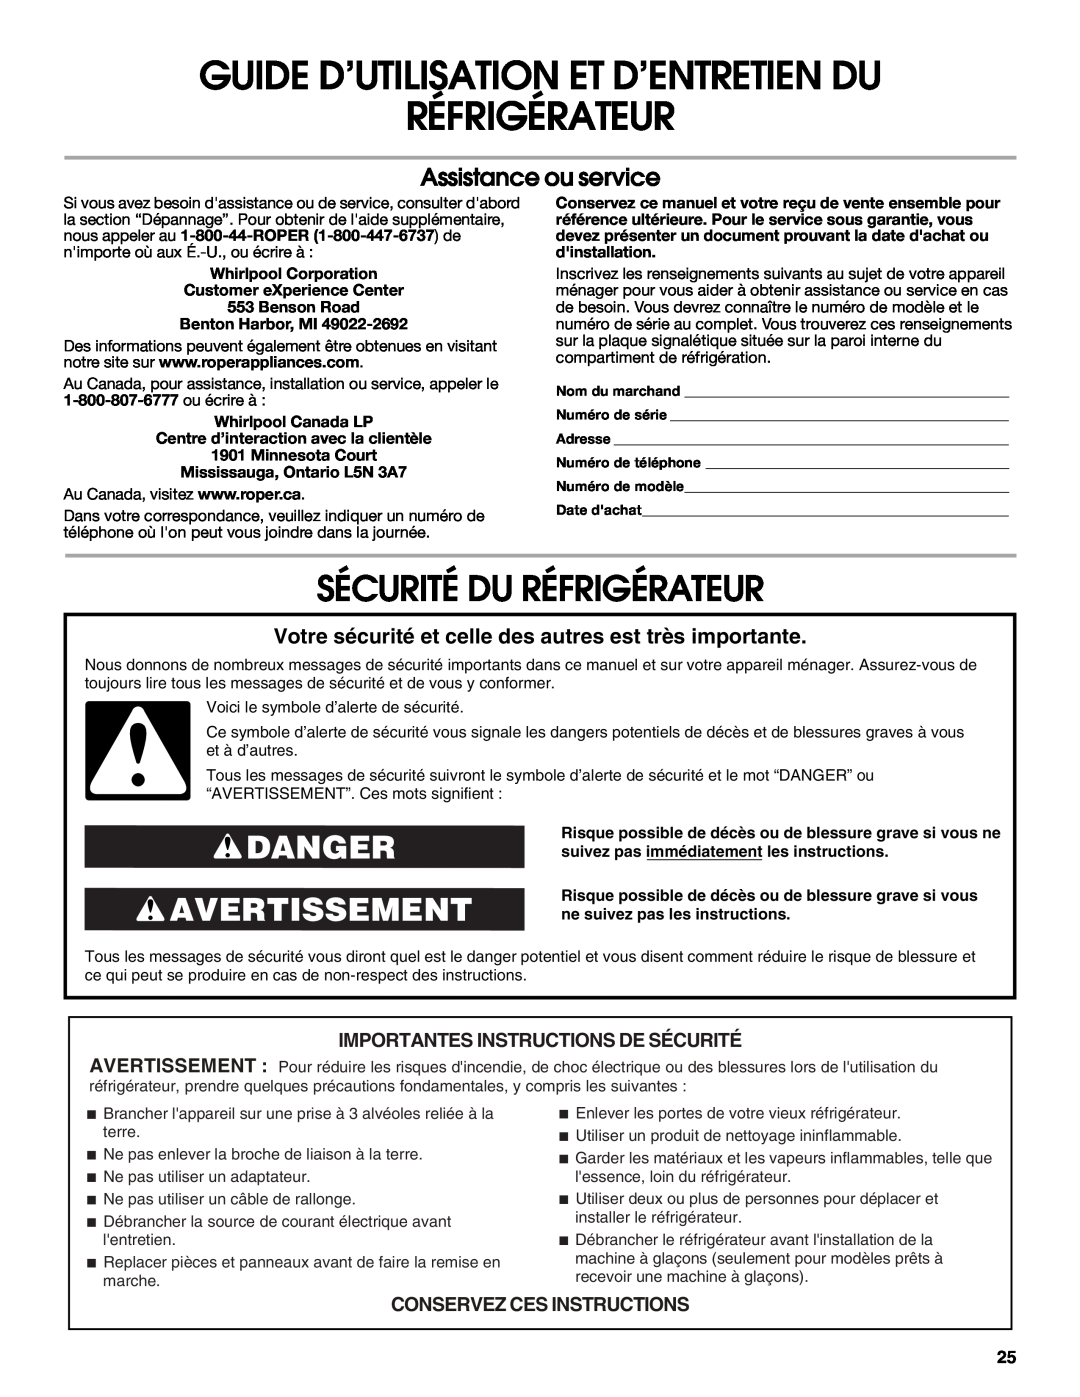 Whirlpool RT14BKXSQ00 warranty Guide D’Utilisation Et D’Entretien Du, Sécurité Du Réfrigérateur, Danger Avertissement 